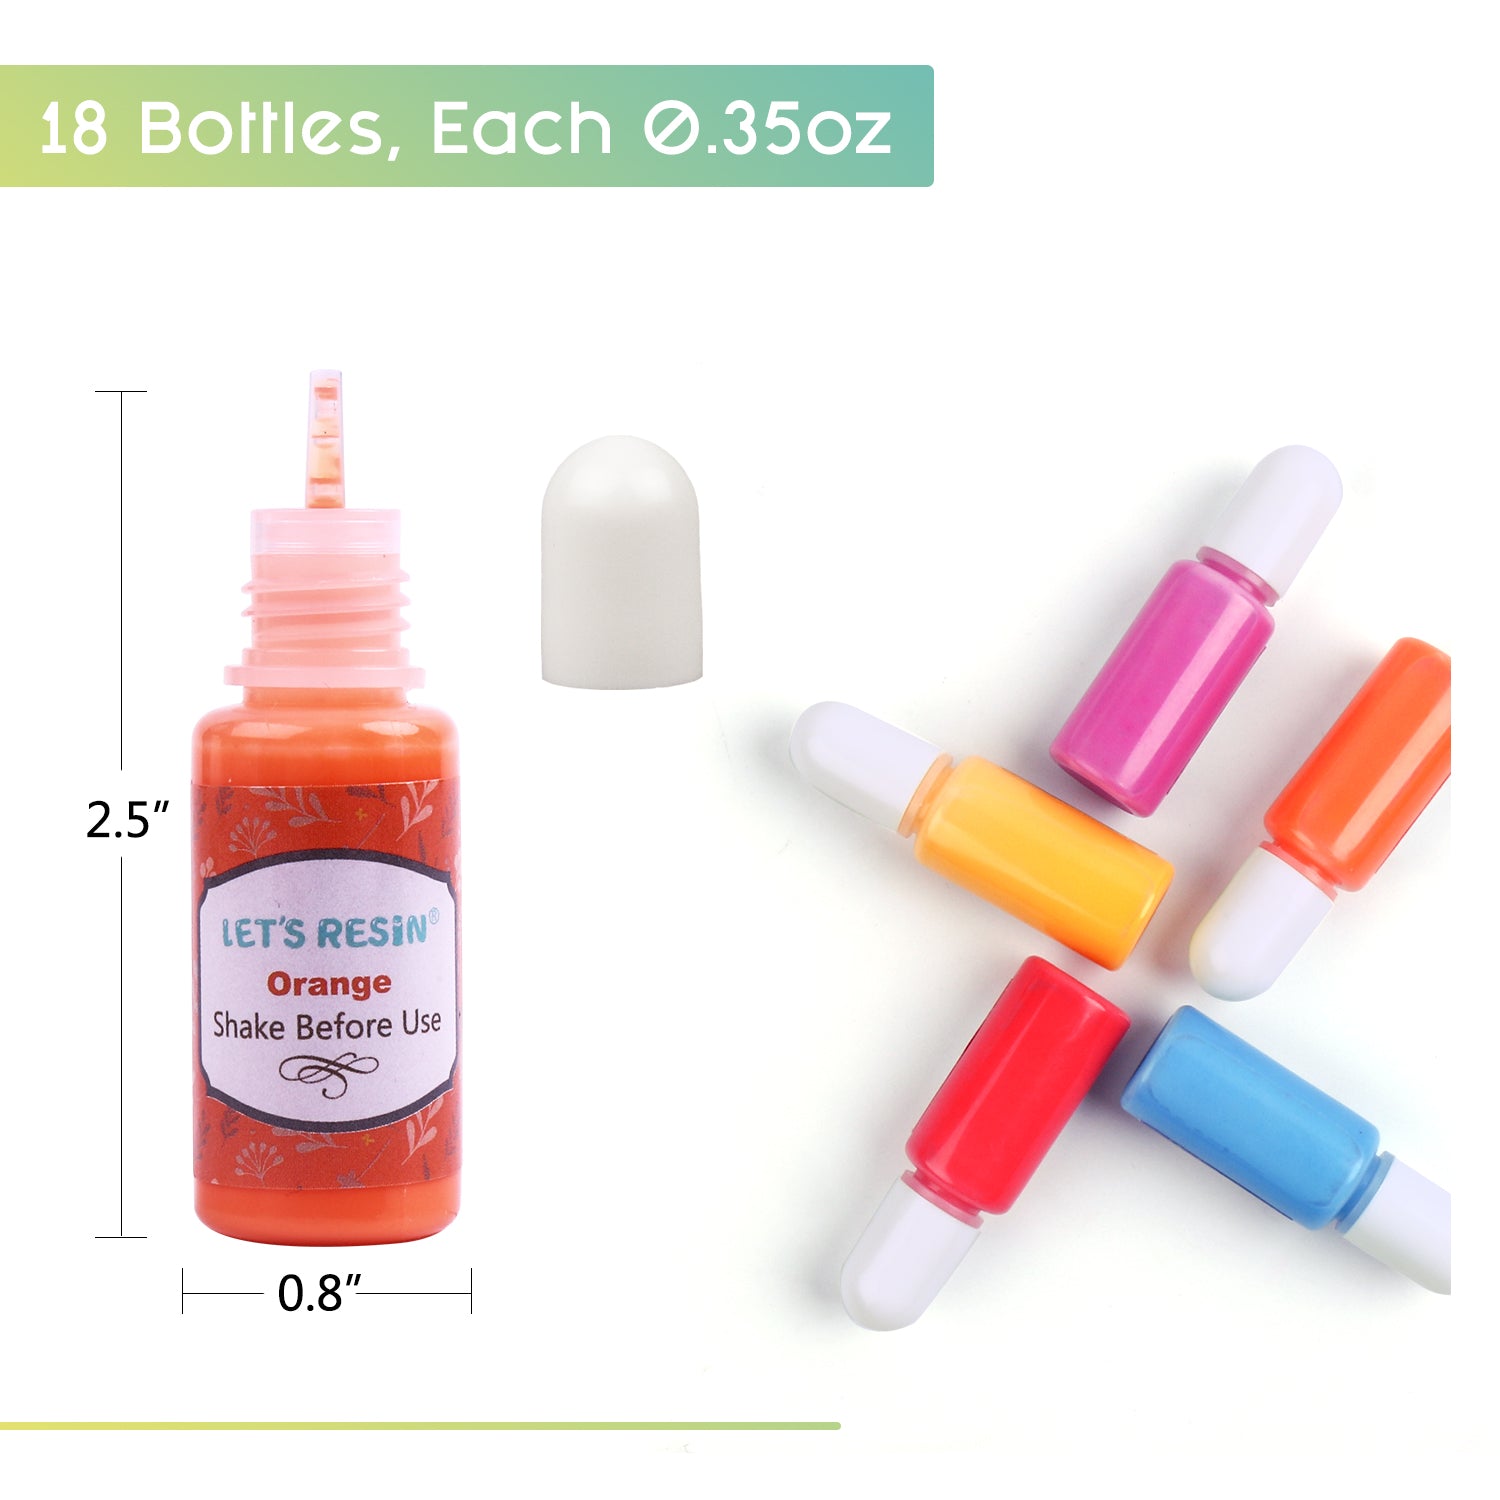 Resin Liquid Pigment - 18 Solid Colors - 0.33 oz/10 ml each – Rolio Pigments